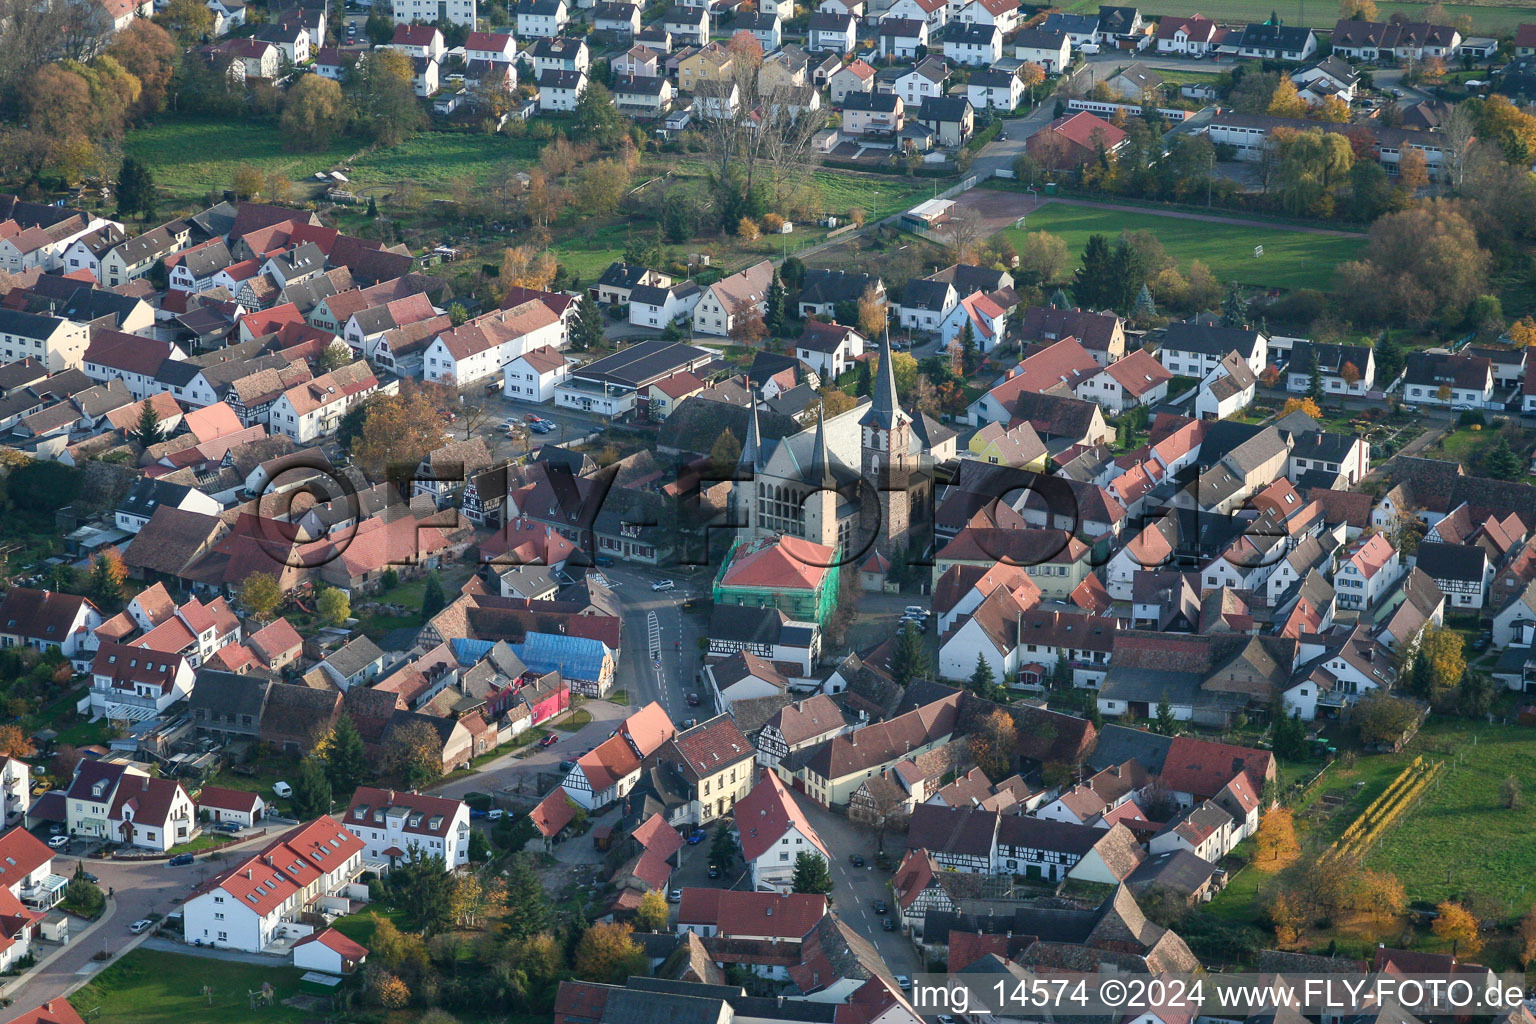 Aerial photograpy of Village view in the district Geinsheim in Neustadt an der Weinstrasse in the state Rhineland-Palatinate